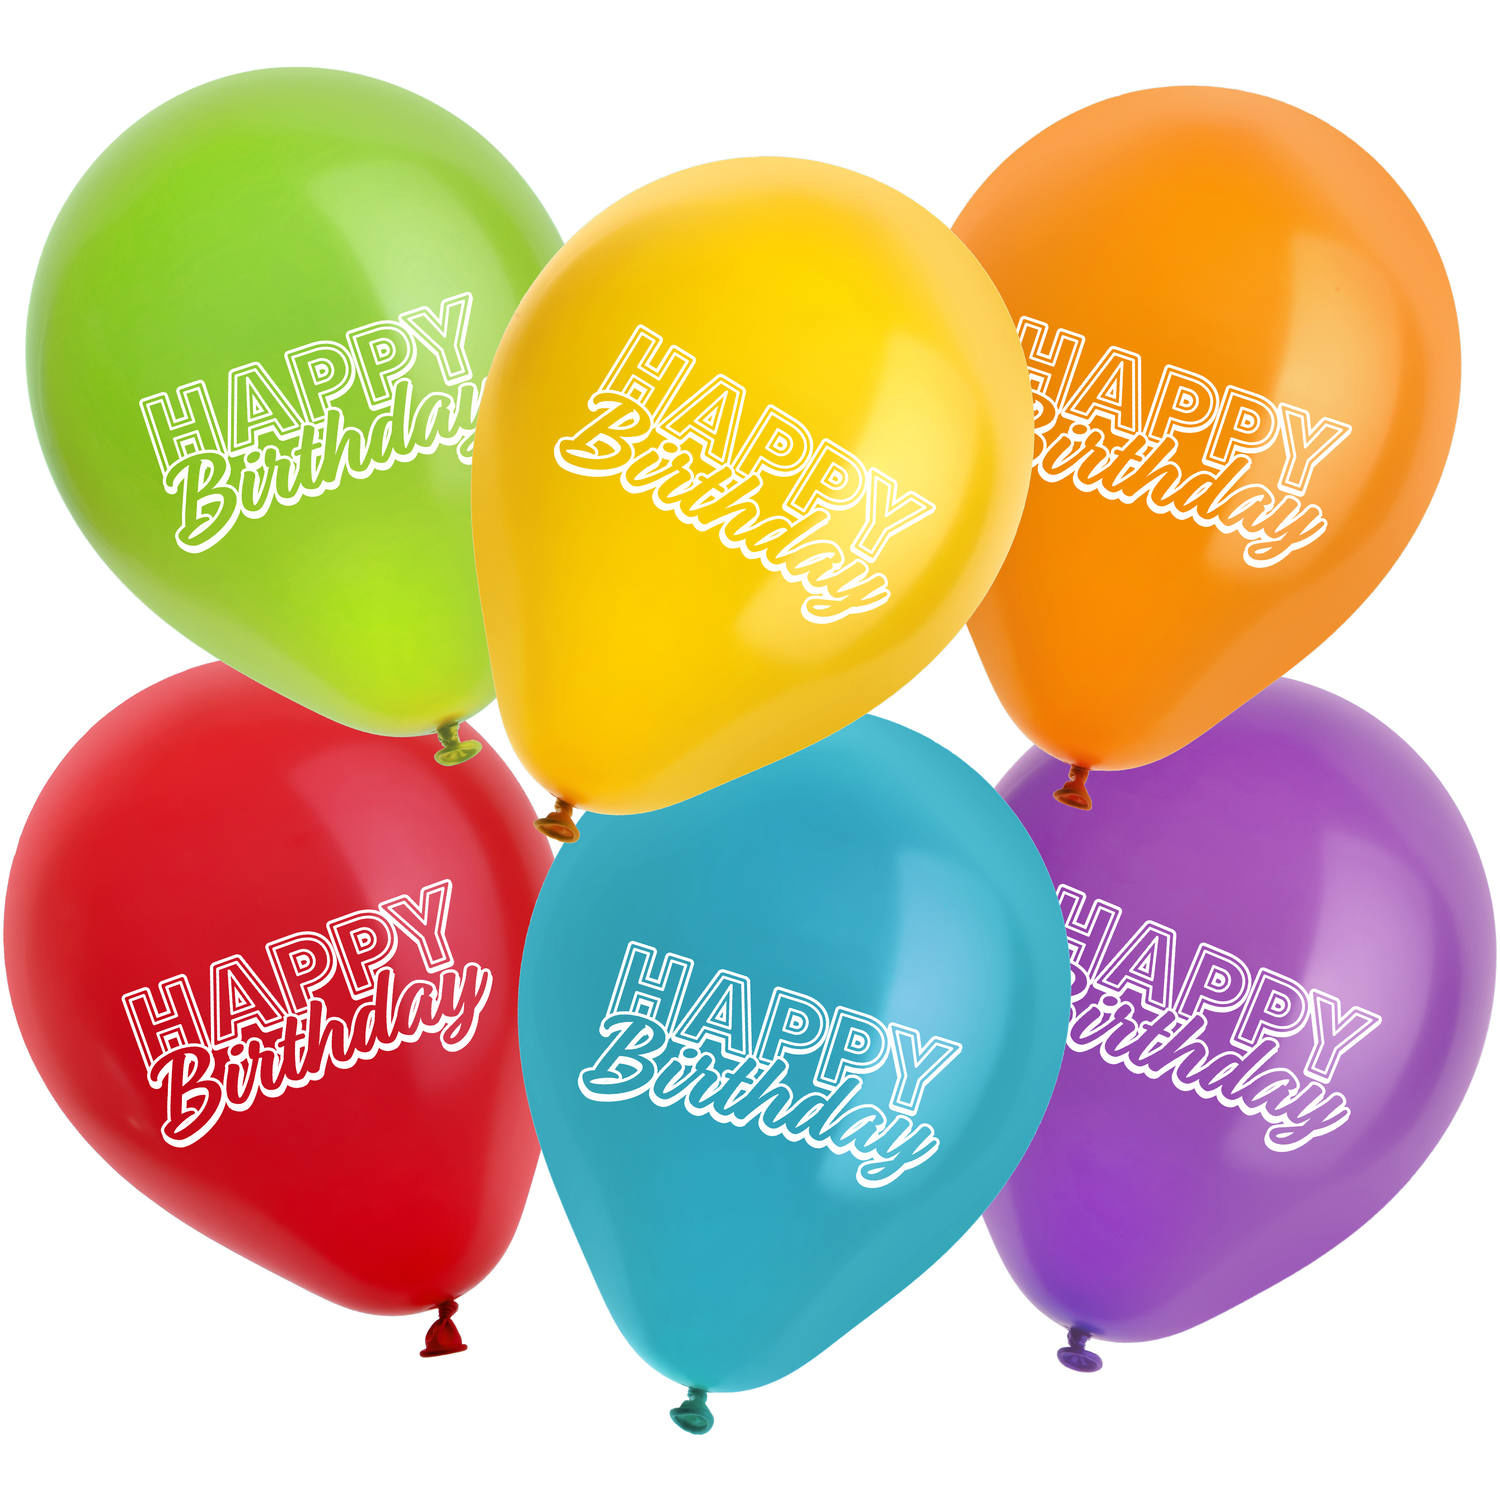 Ballonset Helium & Ballons Happy Birthday, bunte Helium-Ballons zum Geburtstag Bild 3